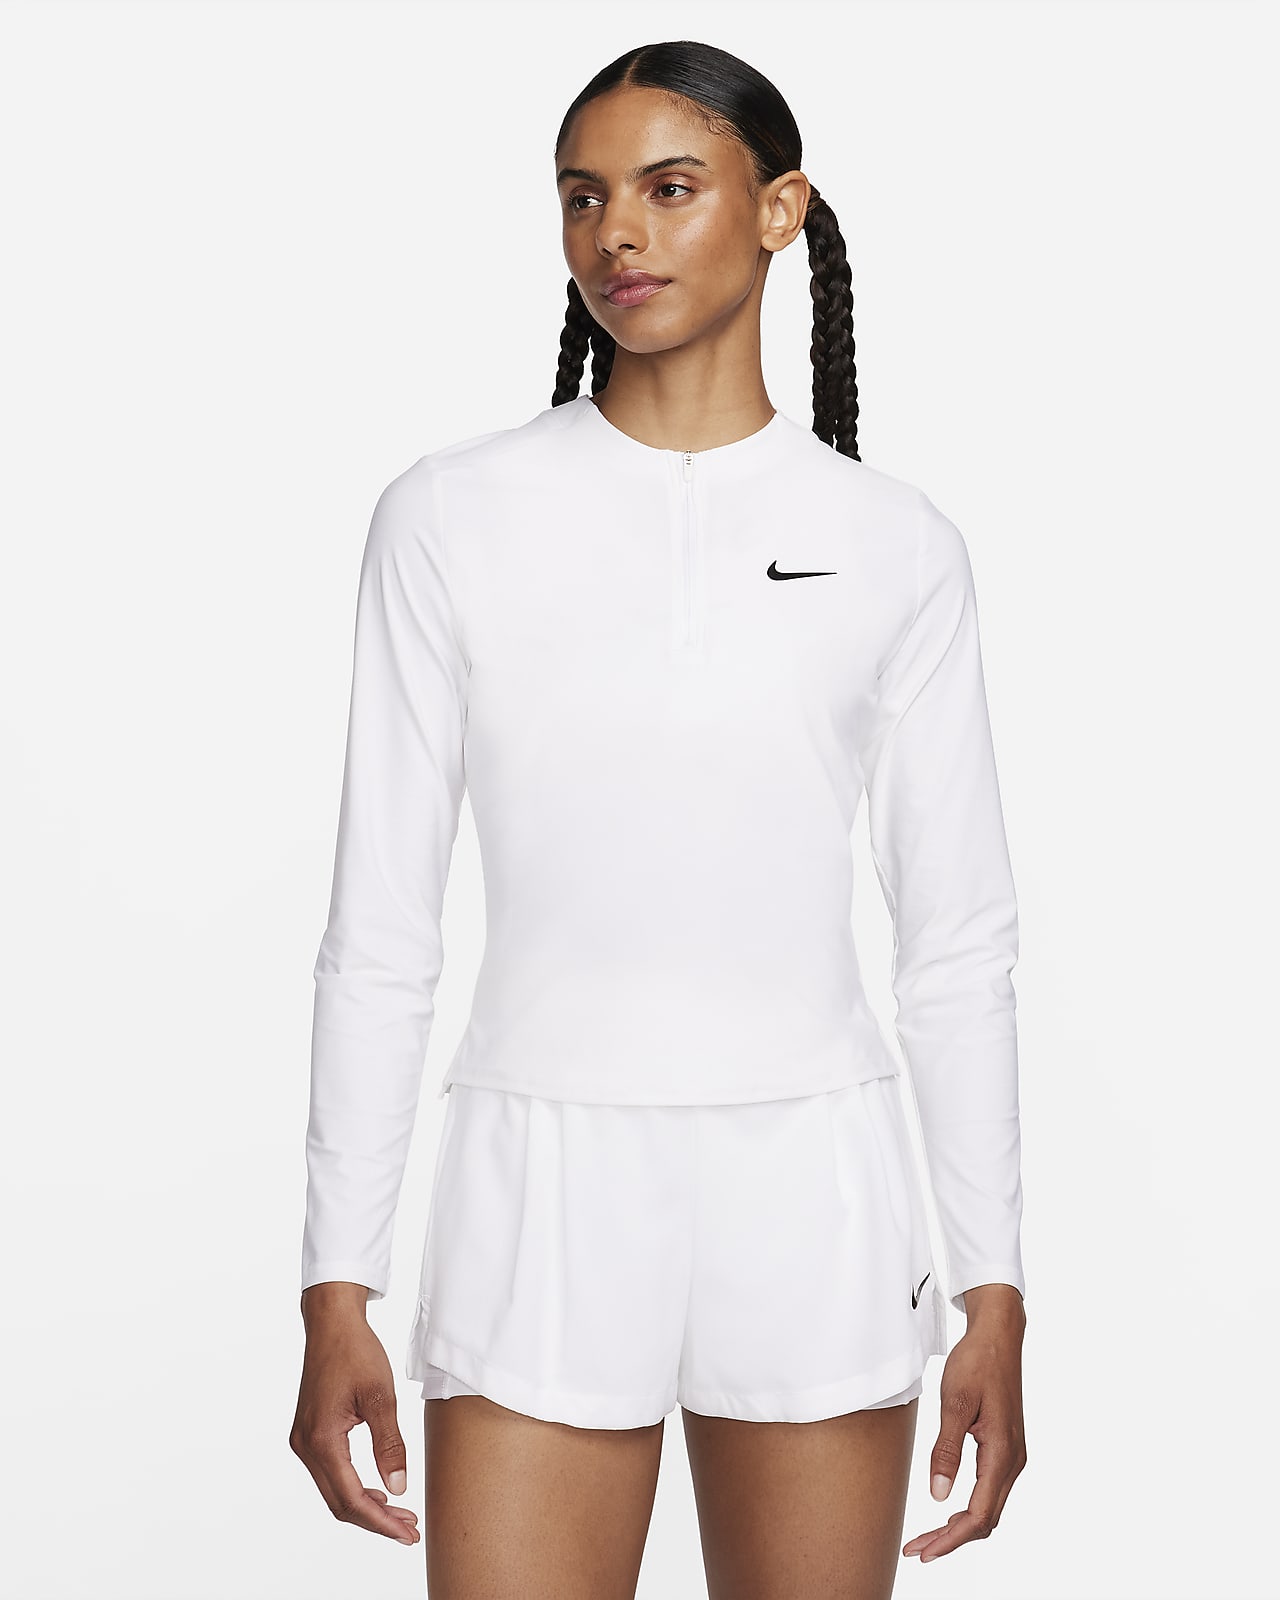 Dámská tenisová střední vrstva NikeCourt Advantage Dri-FIT se čtvrtinovým zipem